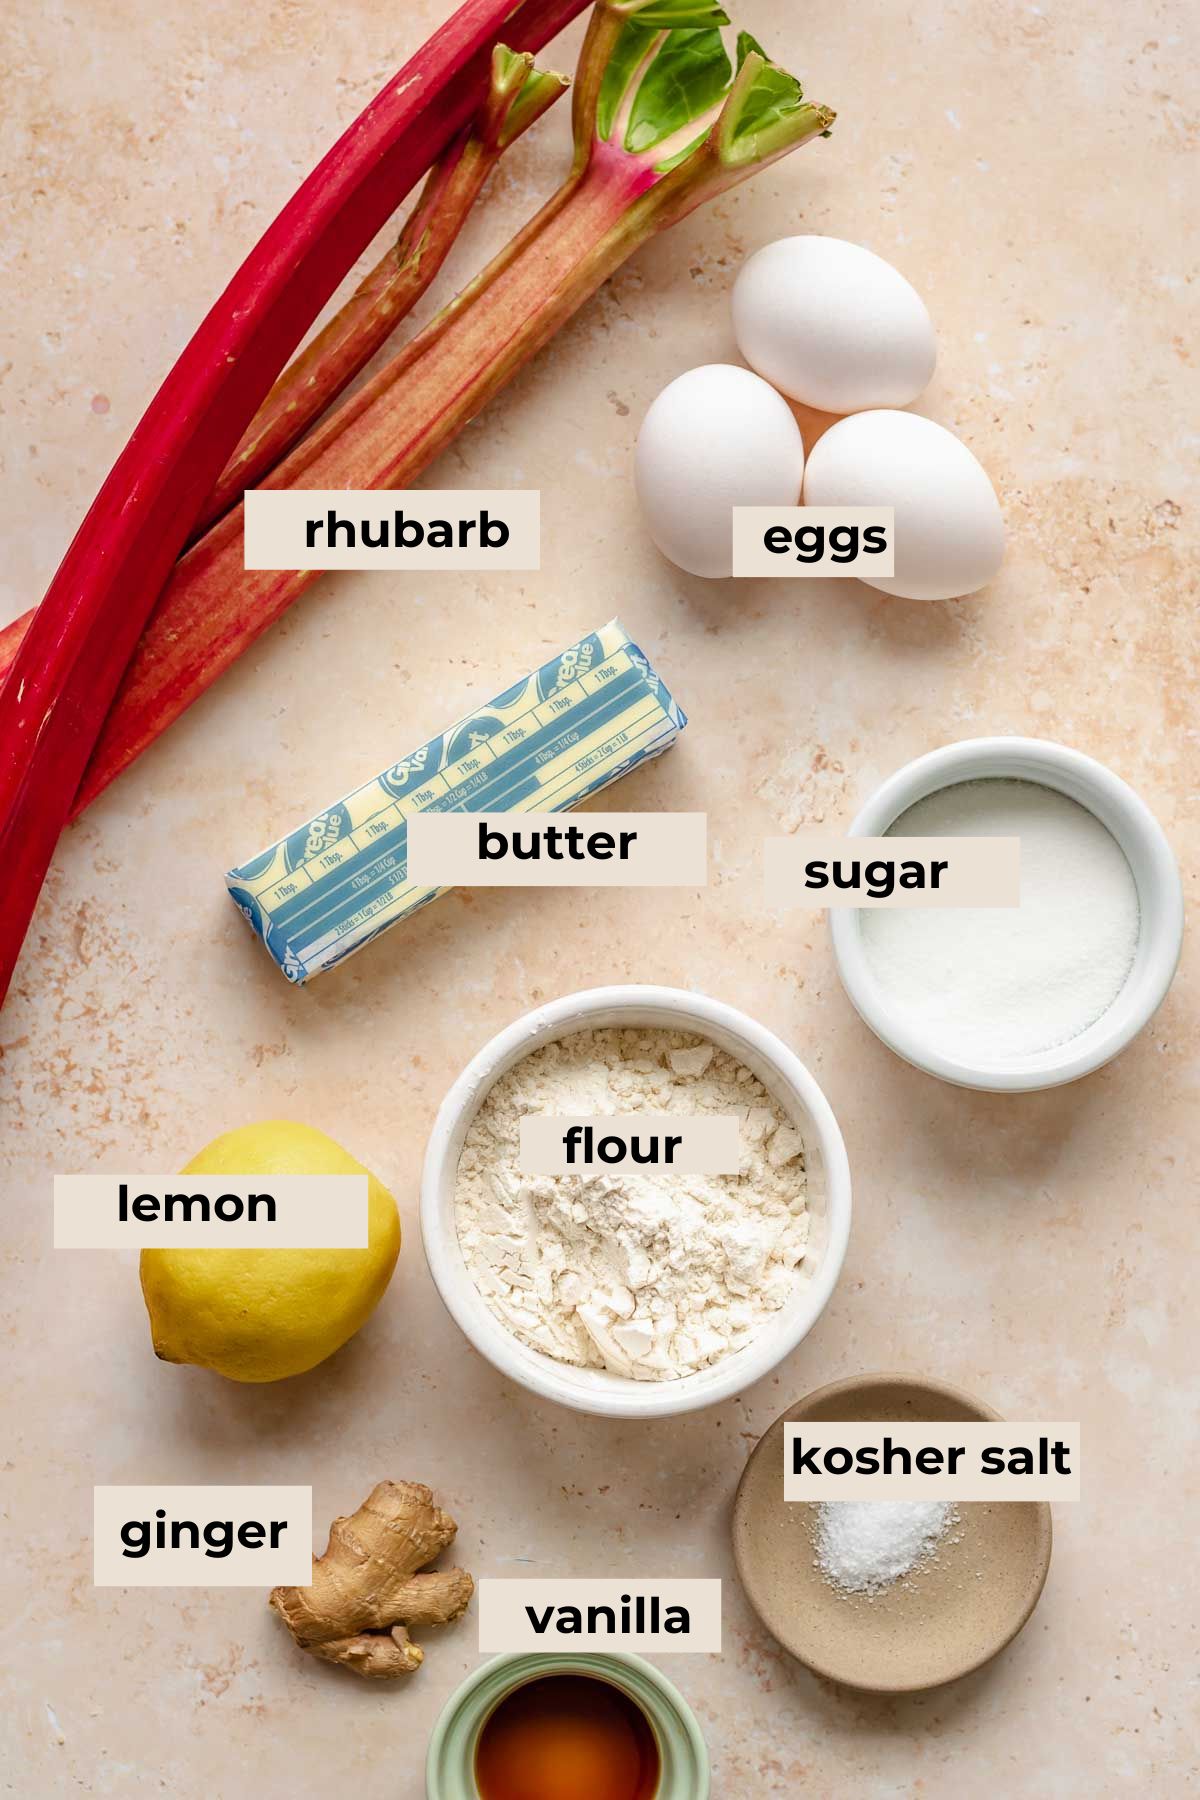 Ingredients for rhubarb bars.